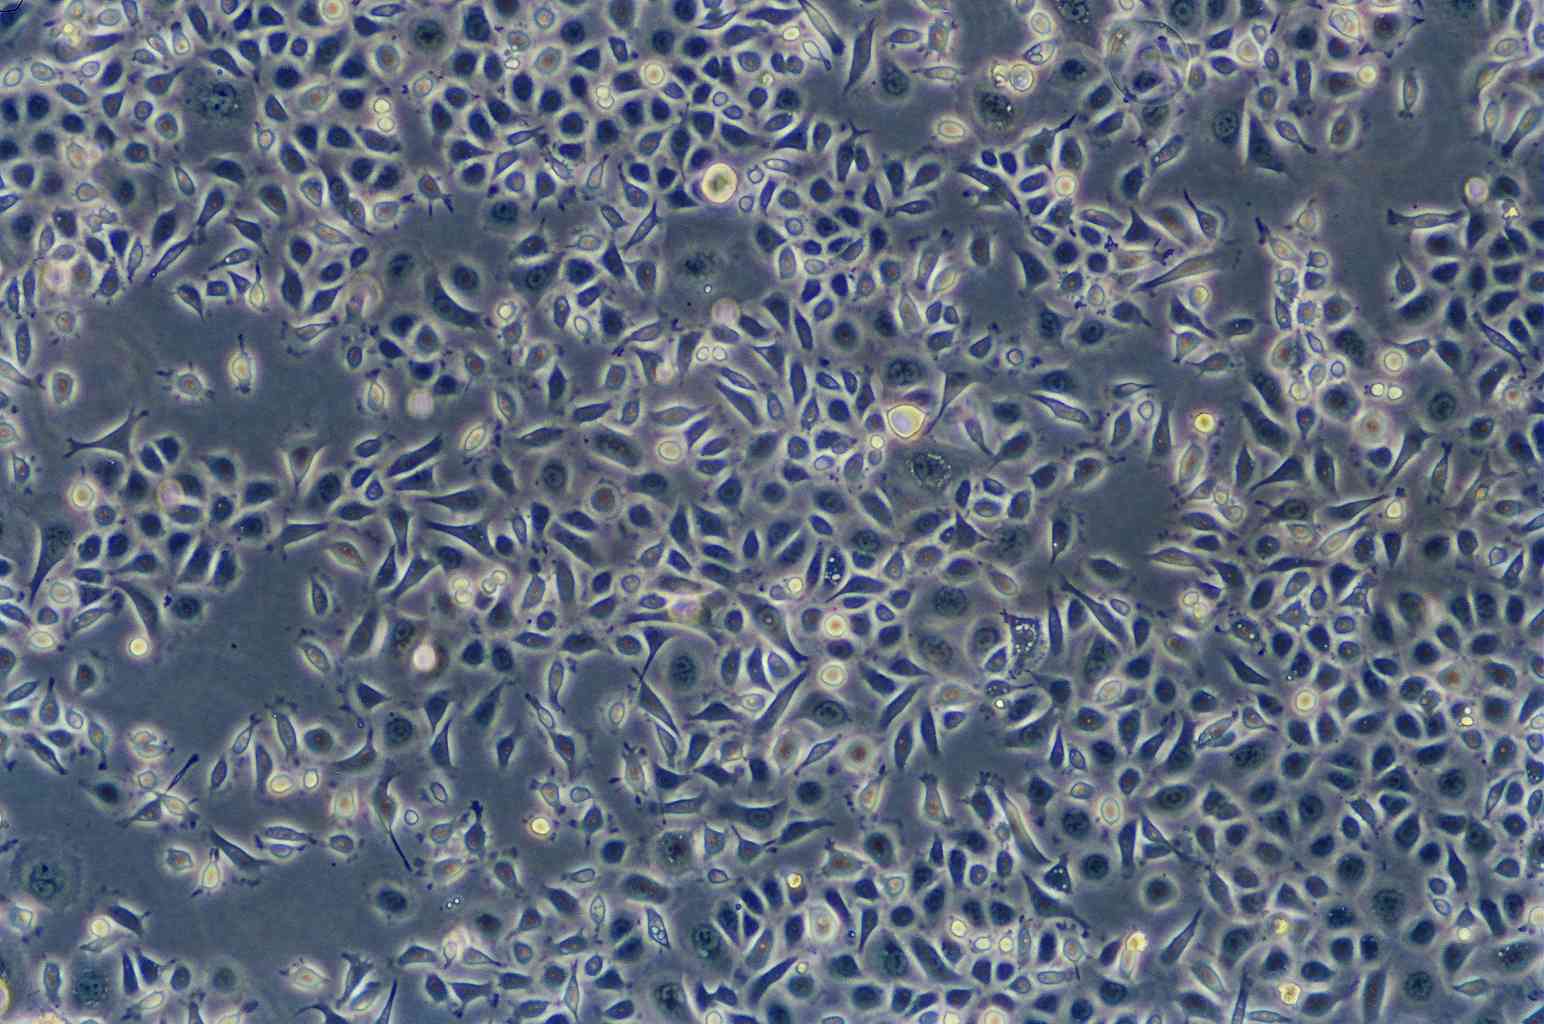 HIT-T15 epithelioid cells仓鼠beta胰岛细胞系,HIT-T15 epithelioid cells